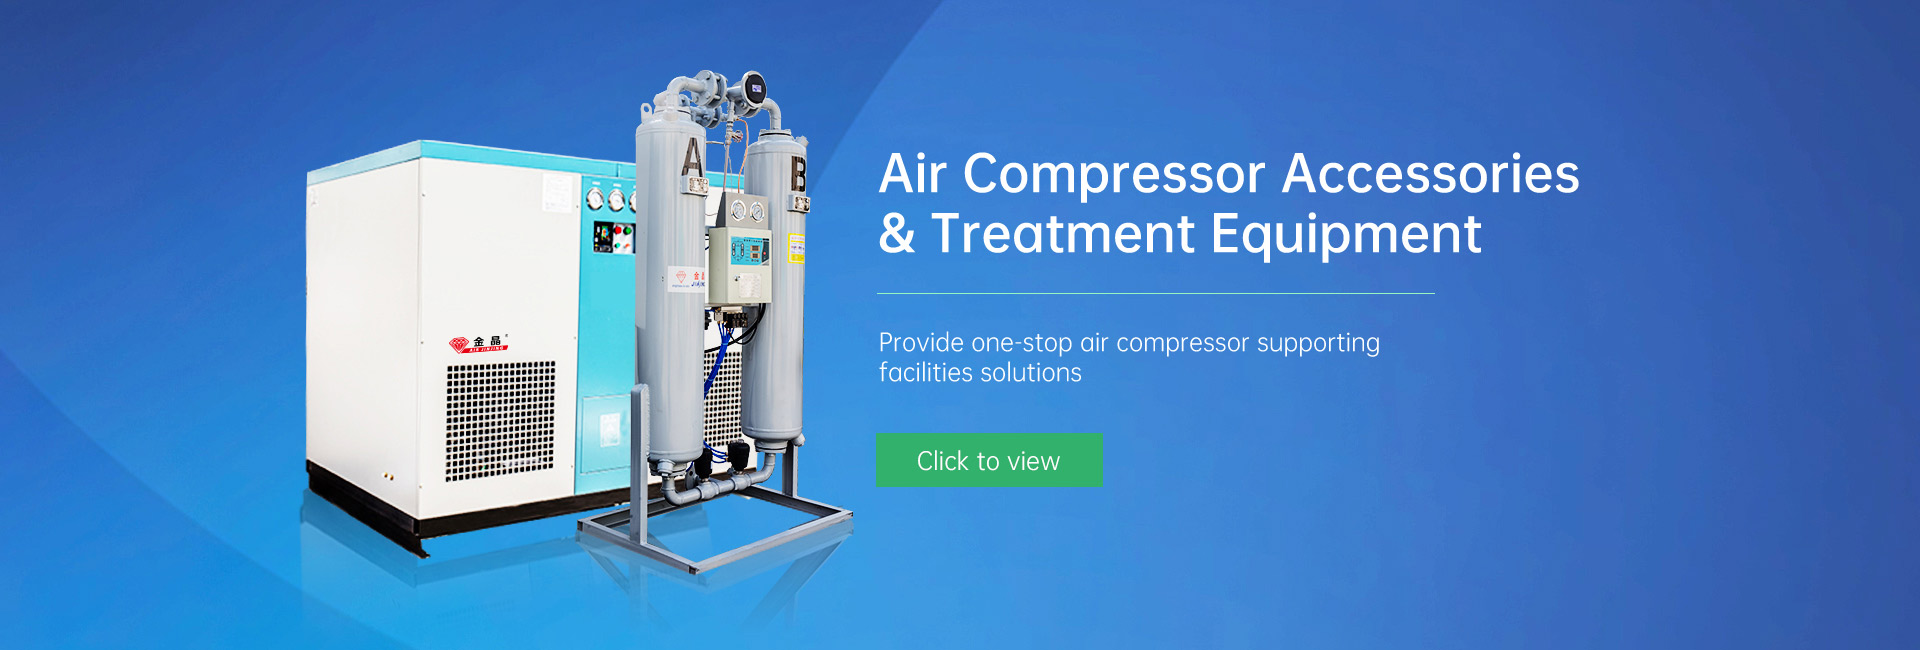 Air Compressor Accessories & Treatment Equipment